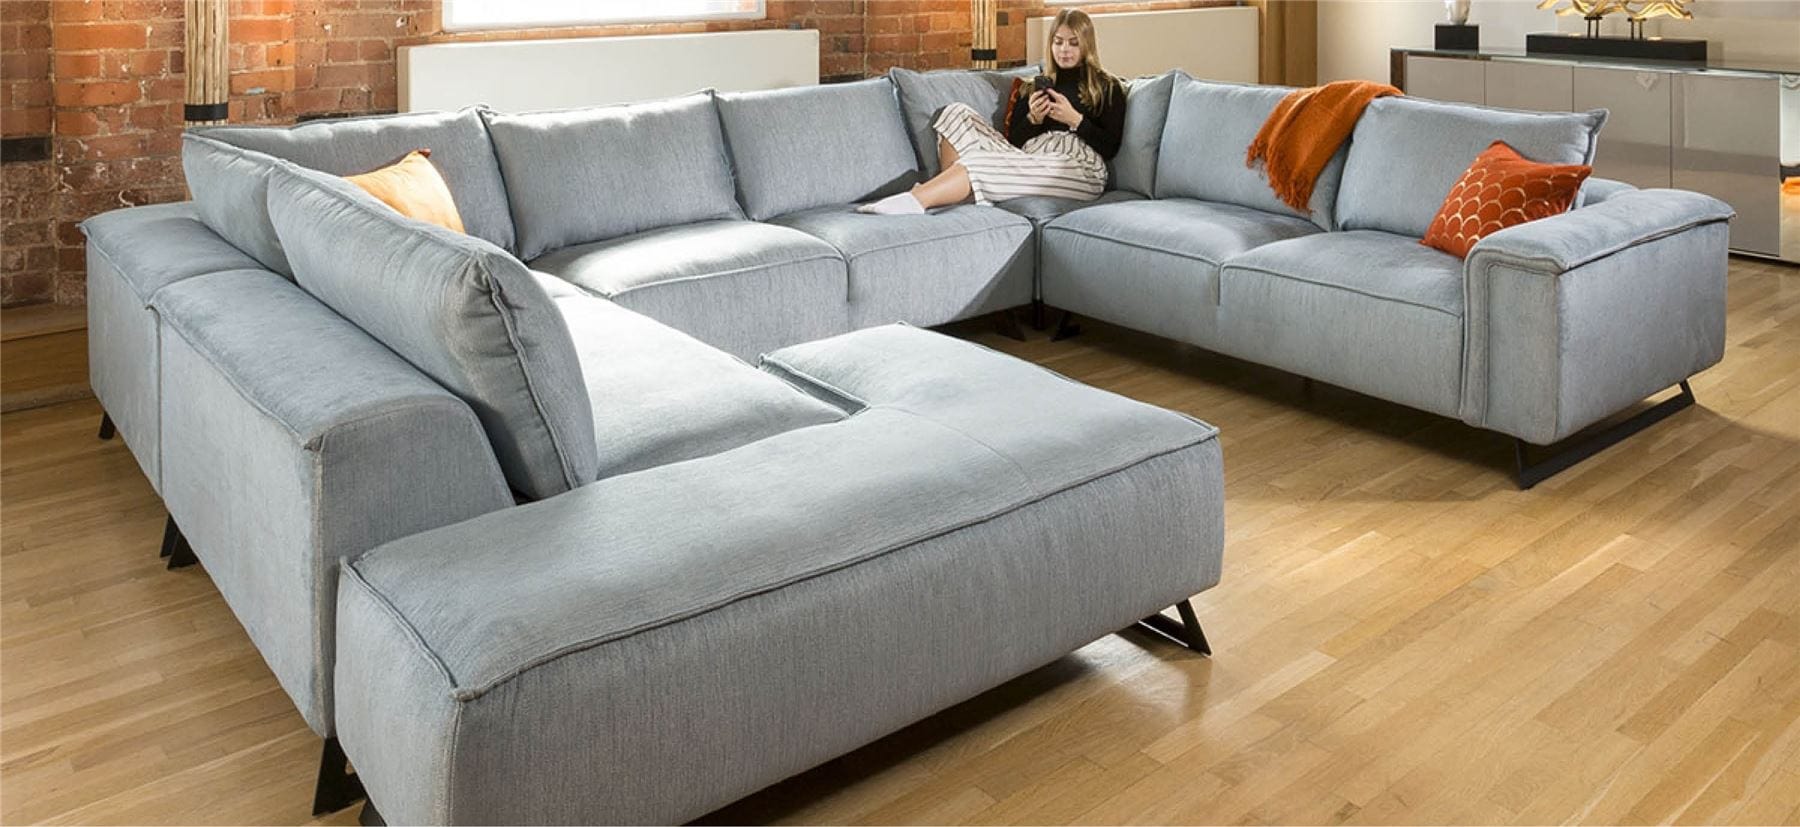 Quatropi Enormous U Shape Cinema Effie Modular Sofa Made to Order 3.8 x 3.0m